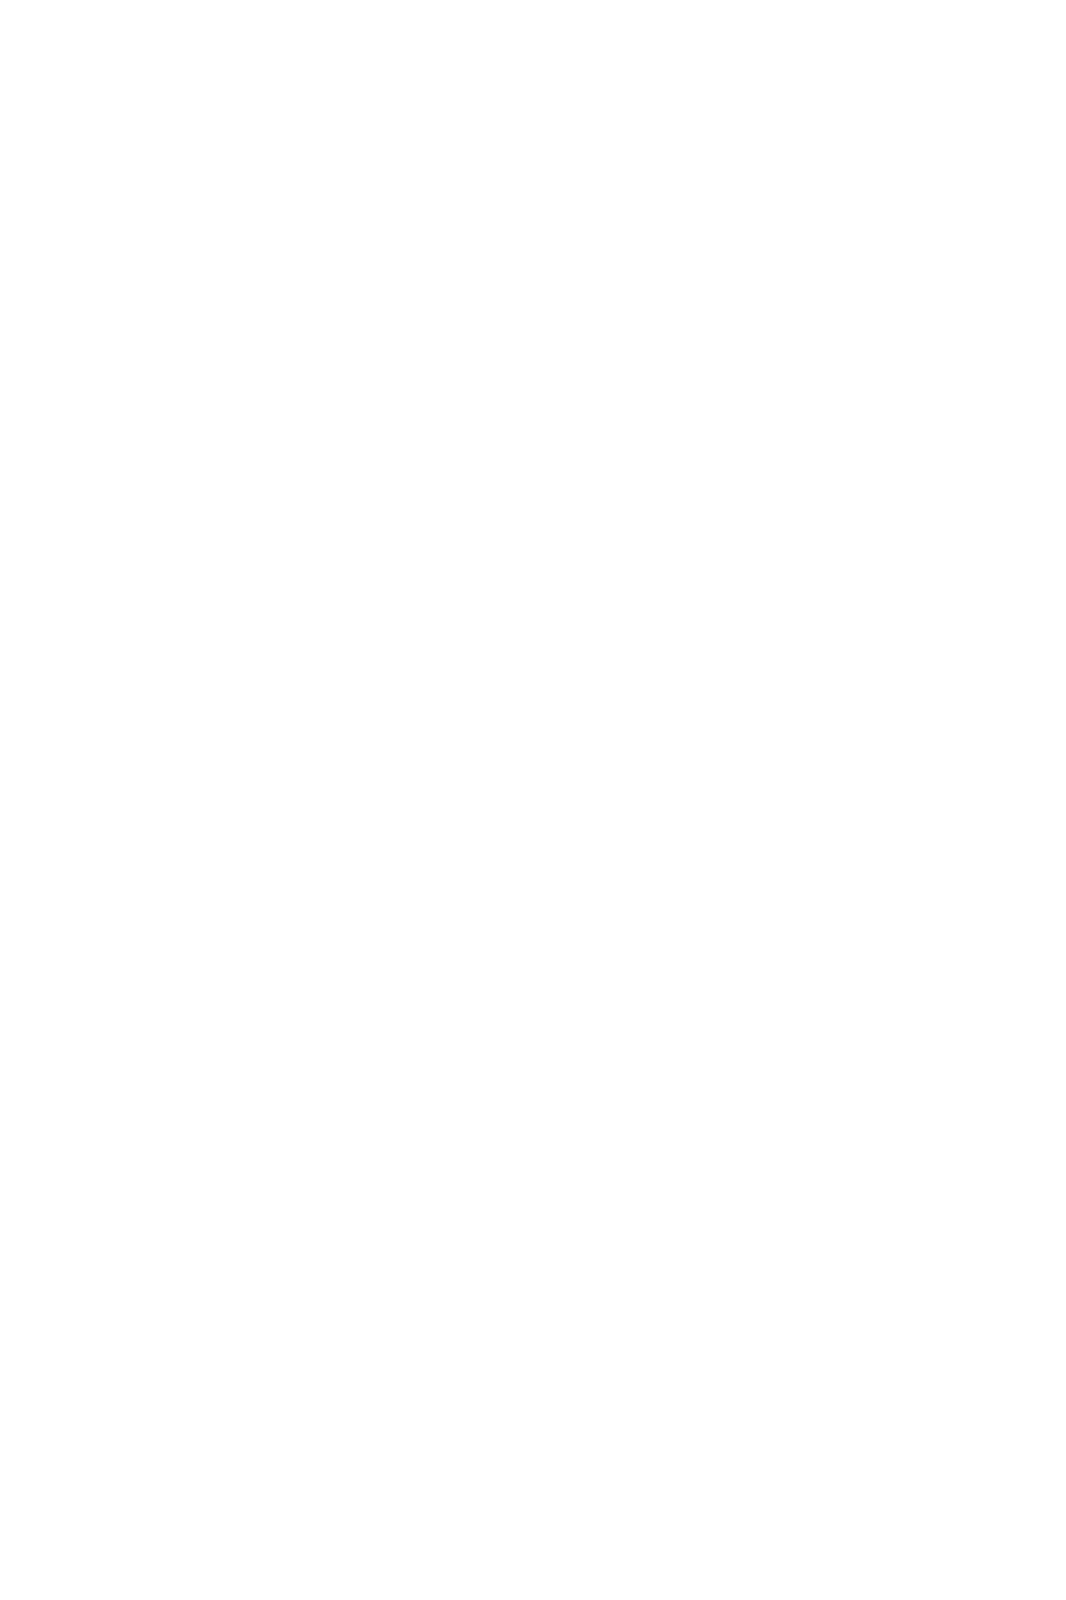 実力派シンガーKIMIKA「原点の地」渋谷109前で新作『With You』リリース記念スペシャル路上ライブ決定サムネイル画像!